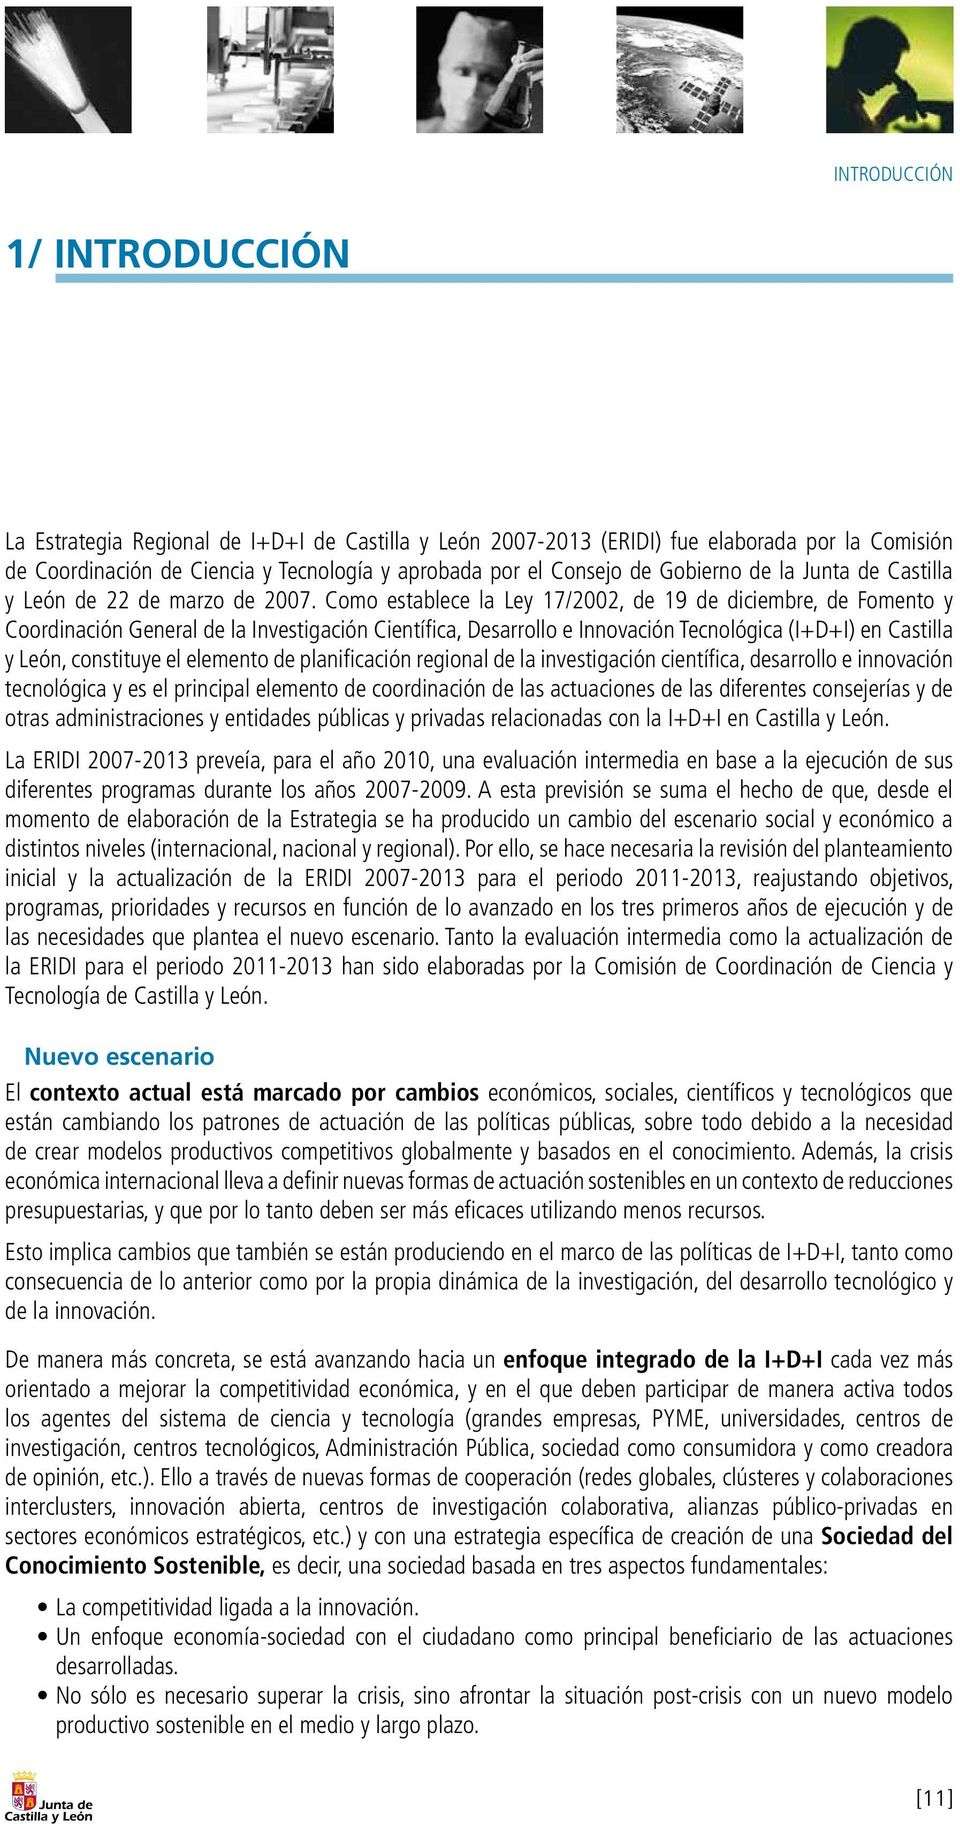 Como establece la Ley 17/2002, de 19 de diciembre, de Fomento y Coordinación General de la Investigación Científica, Desarrollo e Innovación Tecnológica (I+D+I) en Castilla y León, constituye el